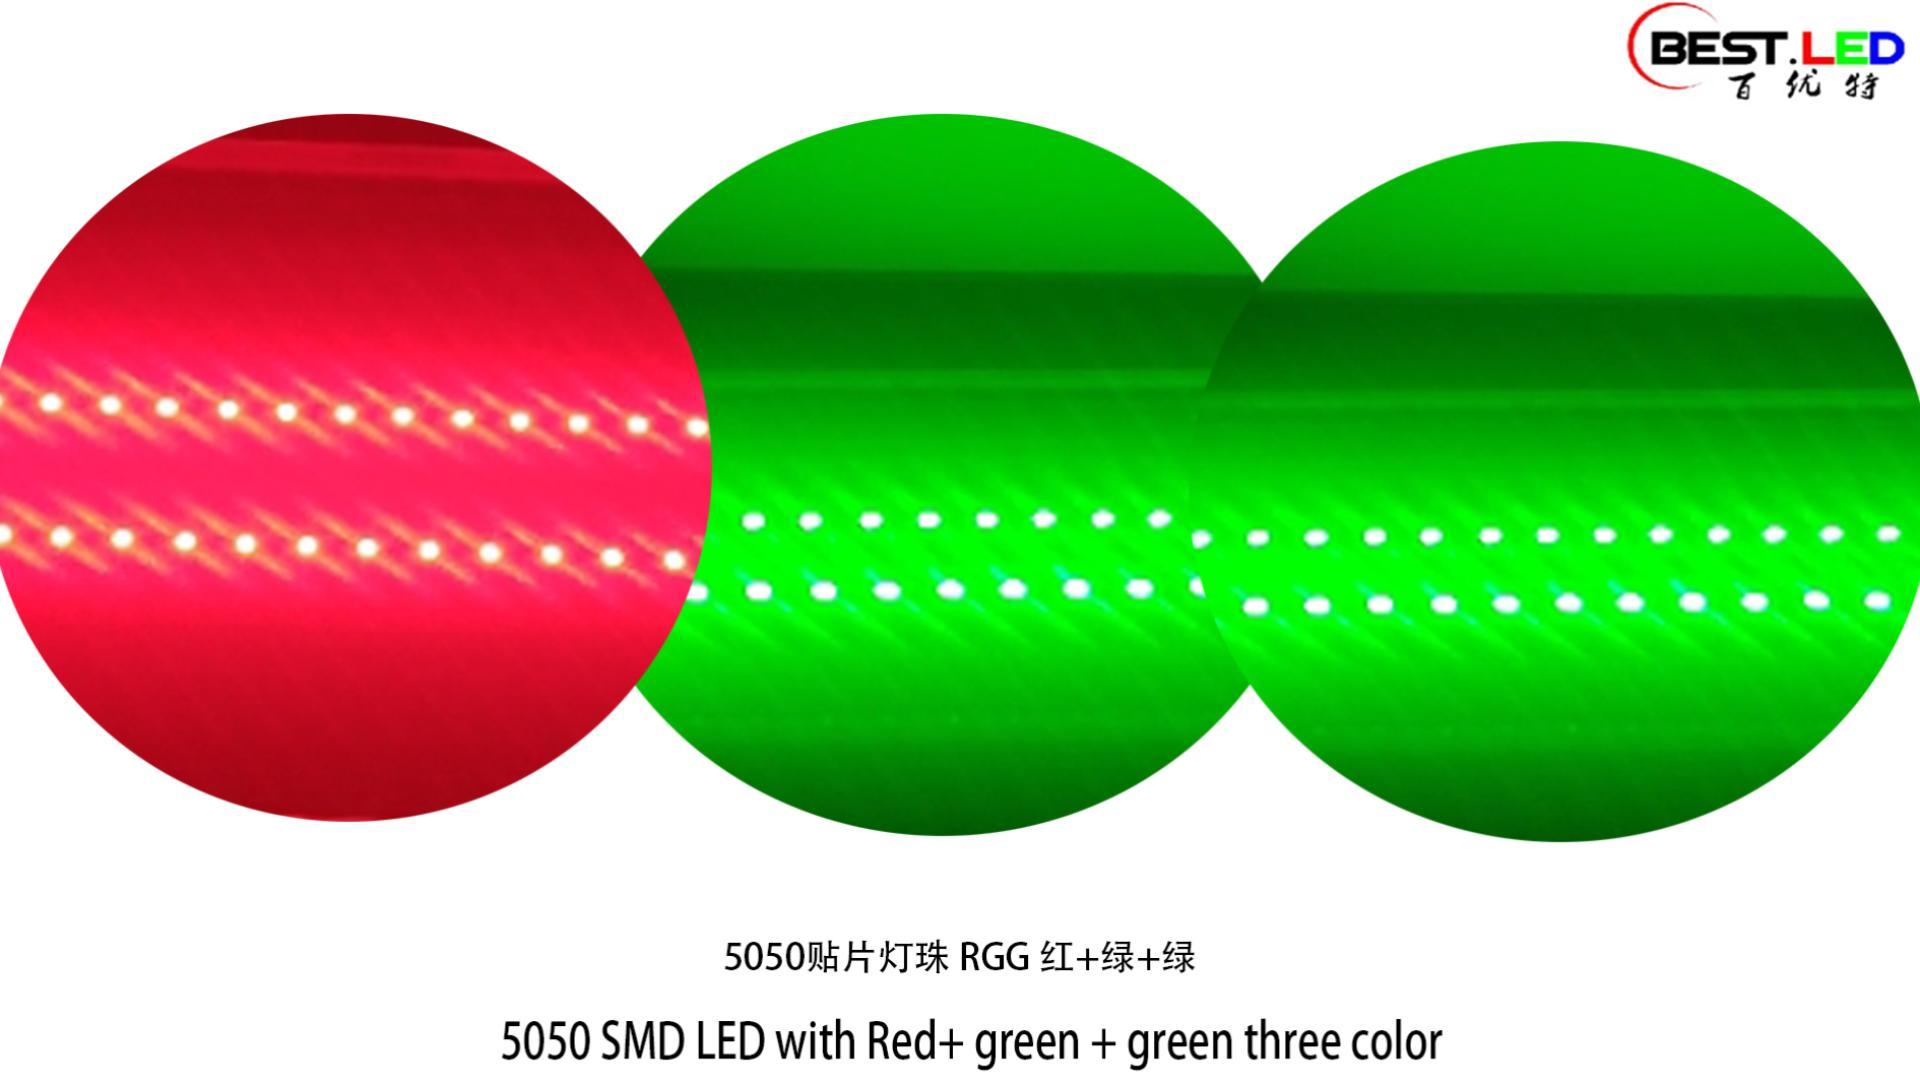 5050 SMD ledet med rød + grønn + grønn tre farge